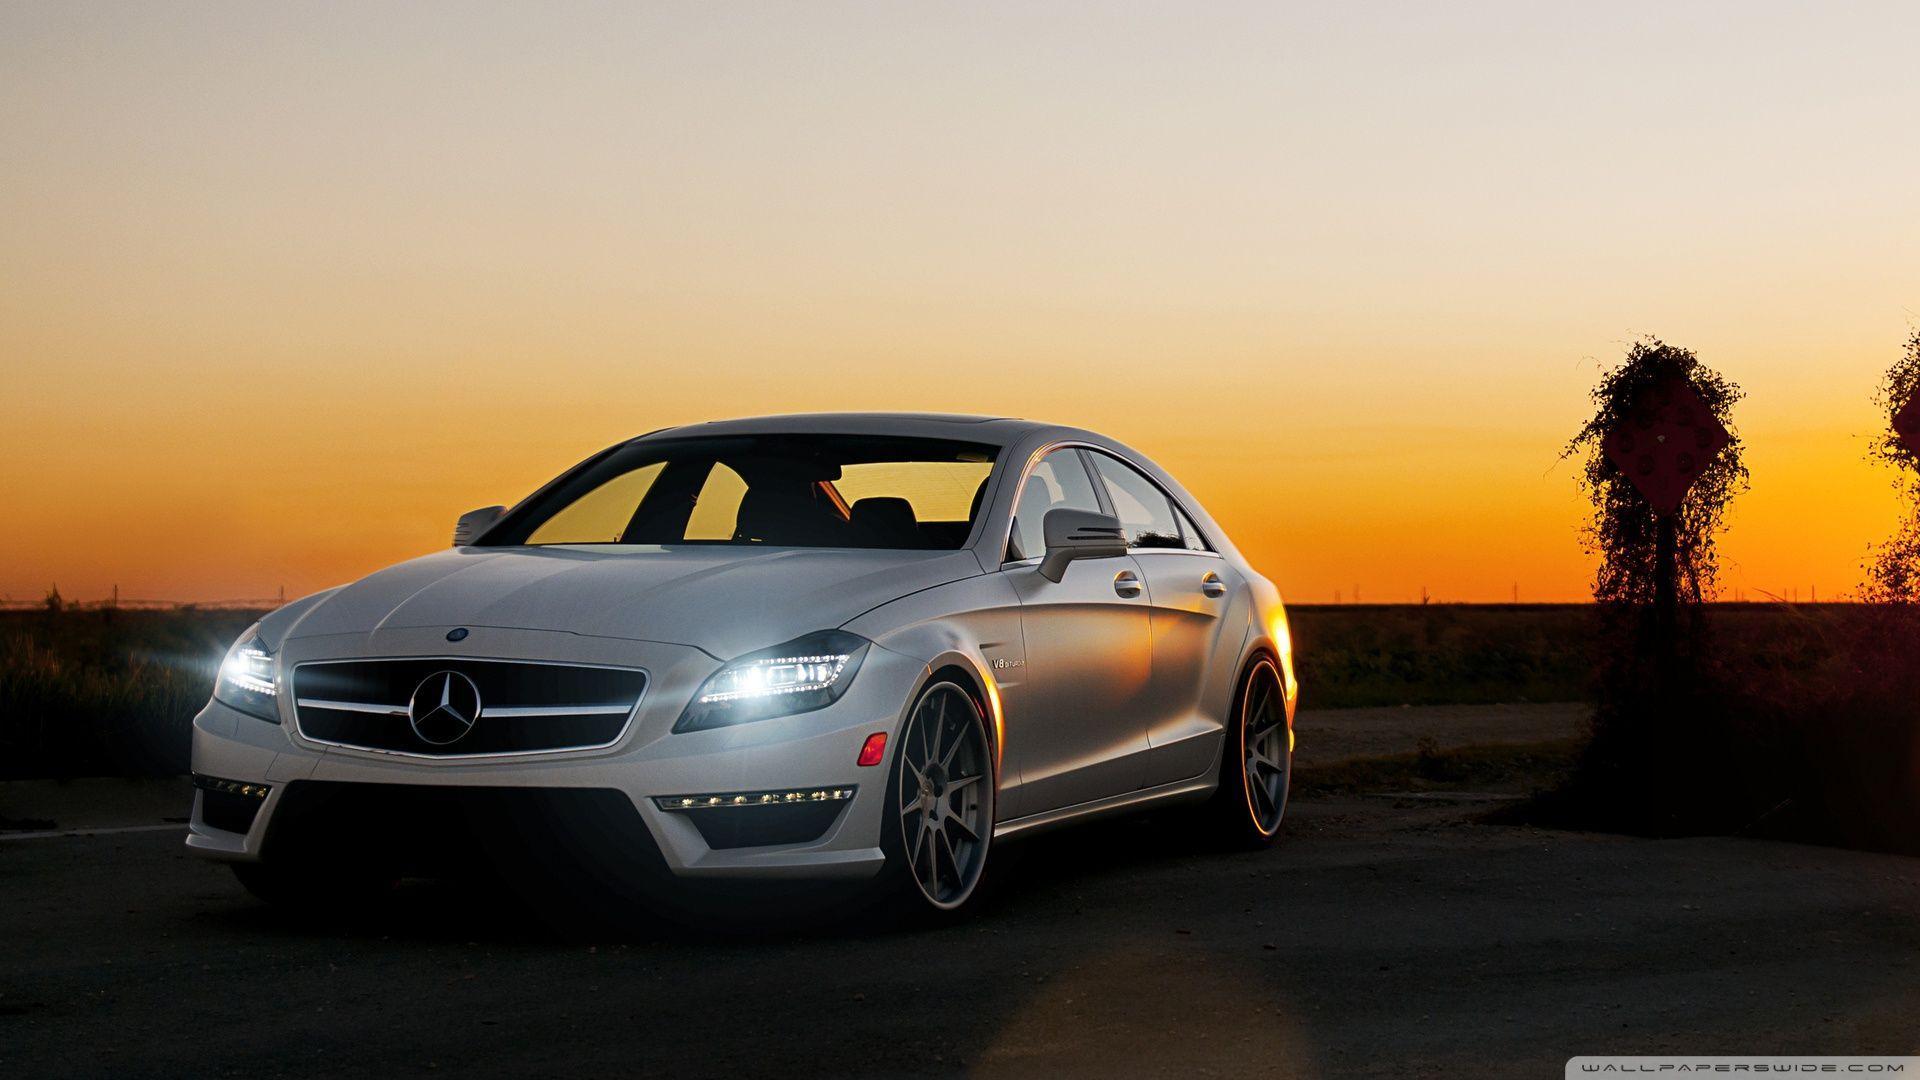 Mercedes Benz Luxury Car HD Desktop Wallpaper, Widescreen, High